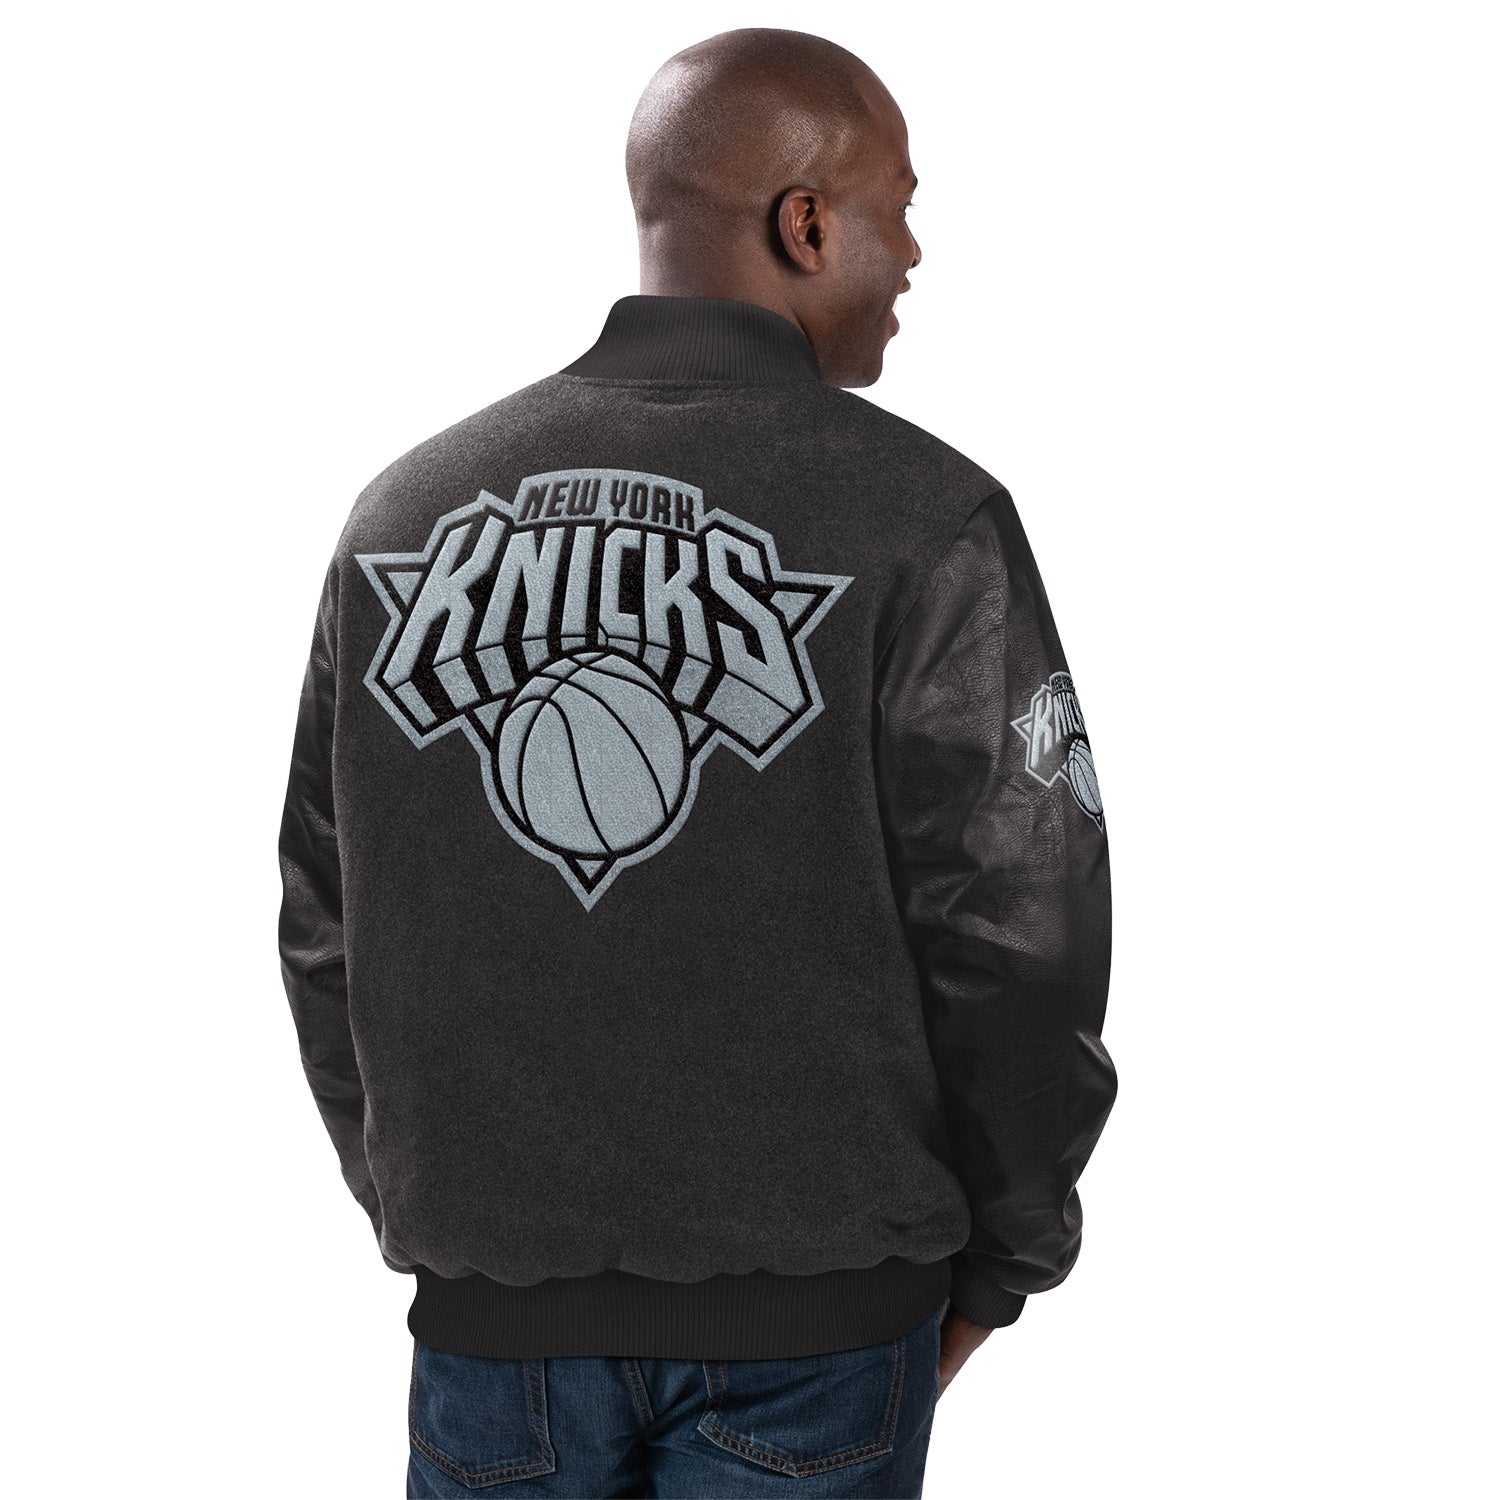 GIII Starter Knicks Wool Leather Tonal Jacket - In Black - Back View